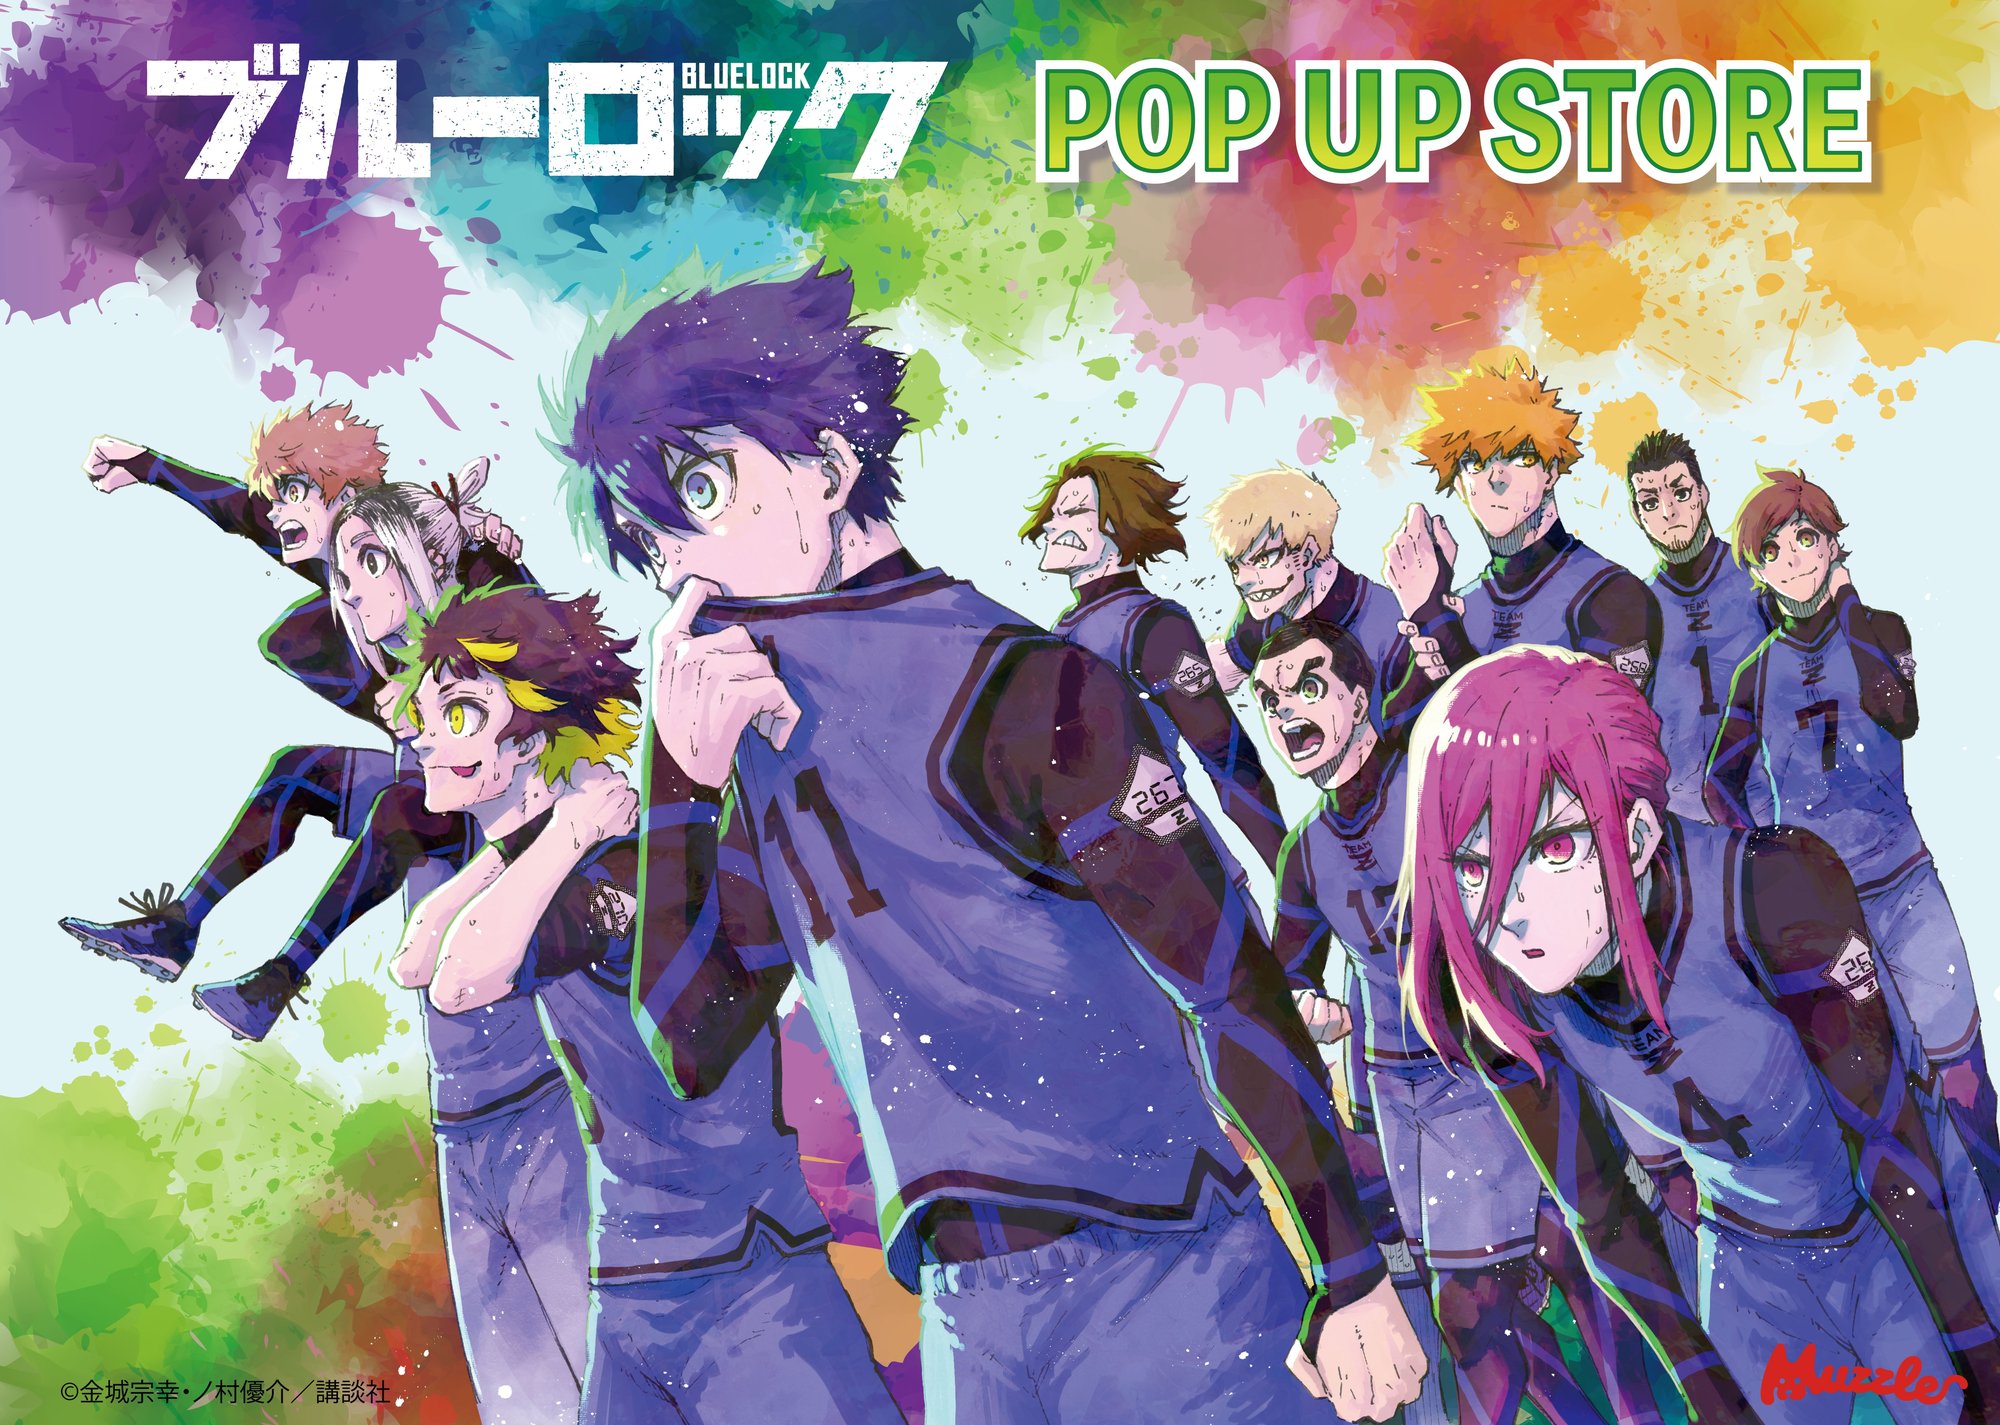 漫画「ブルーロック」POP UP STOREが東京キャラクターストリートで開催